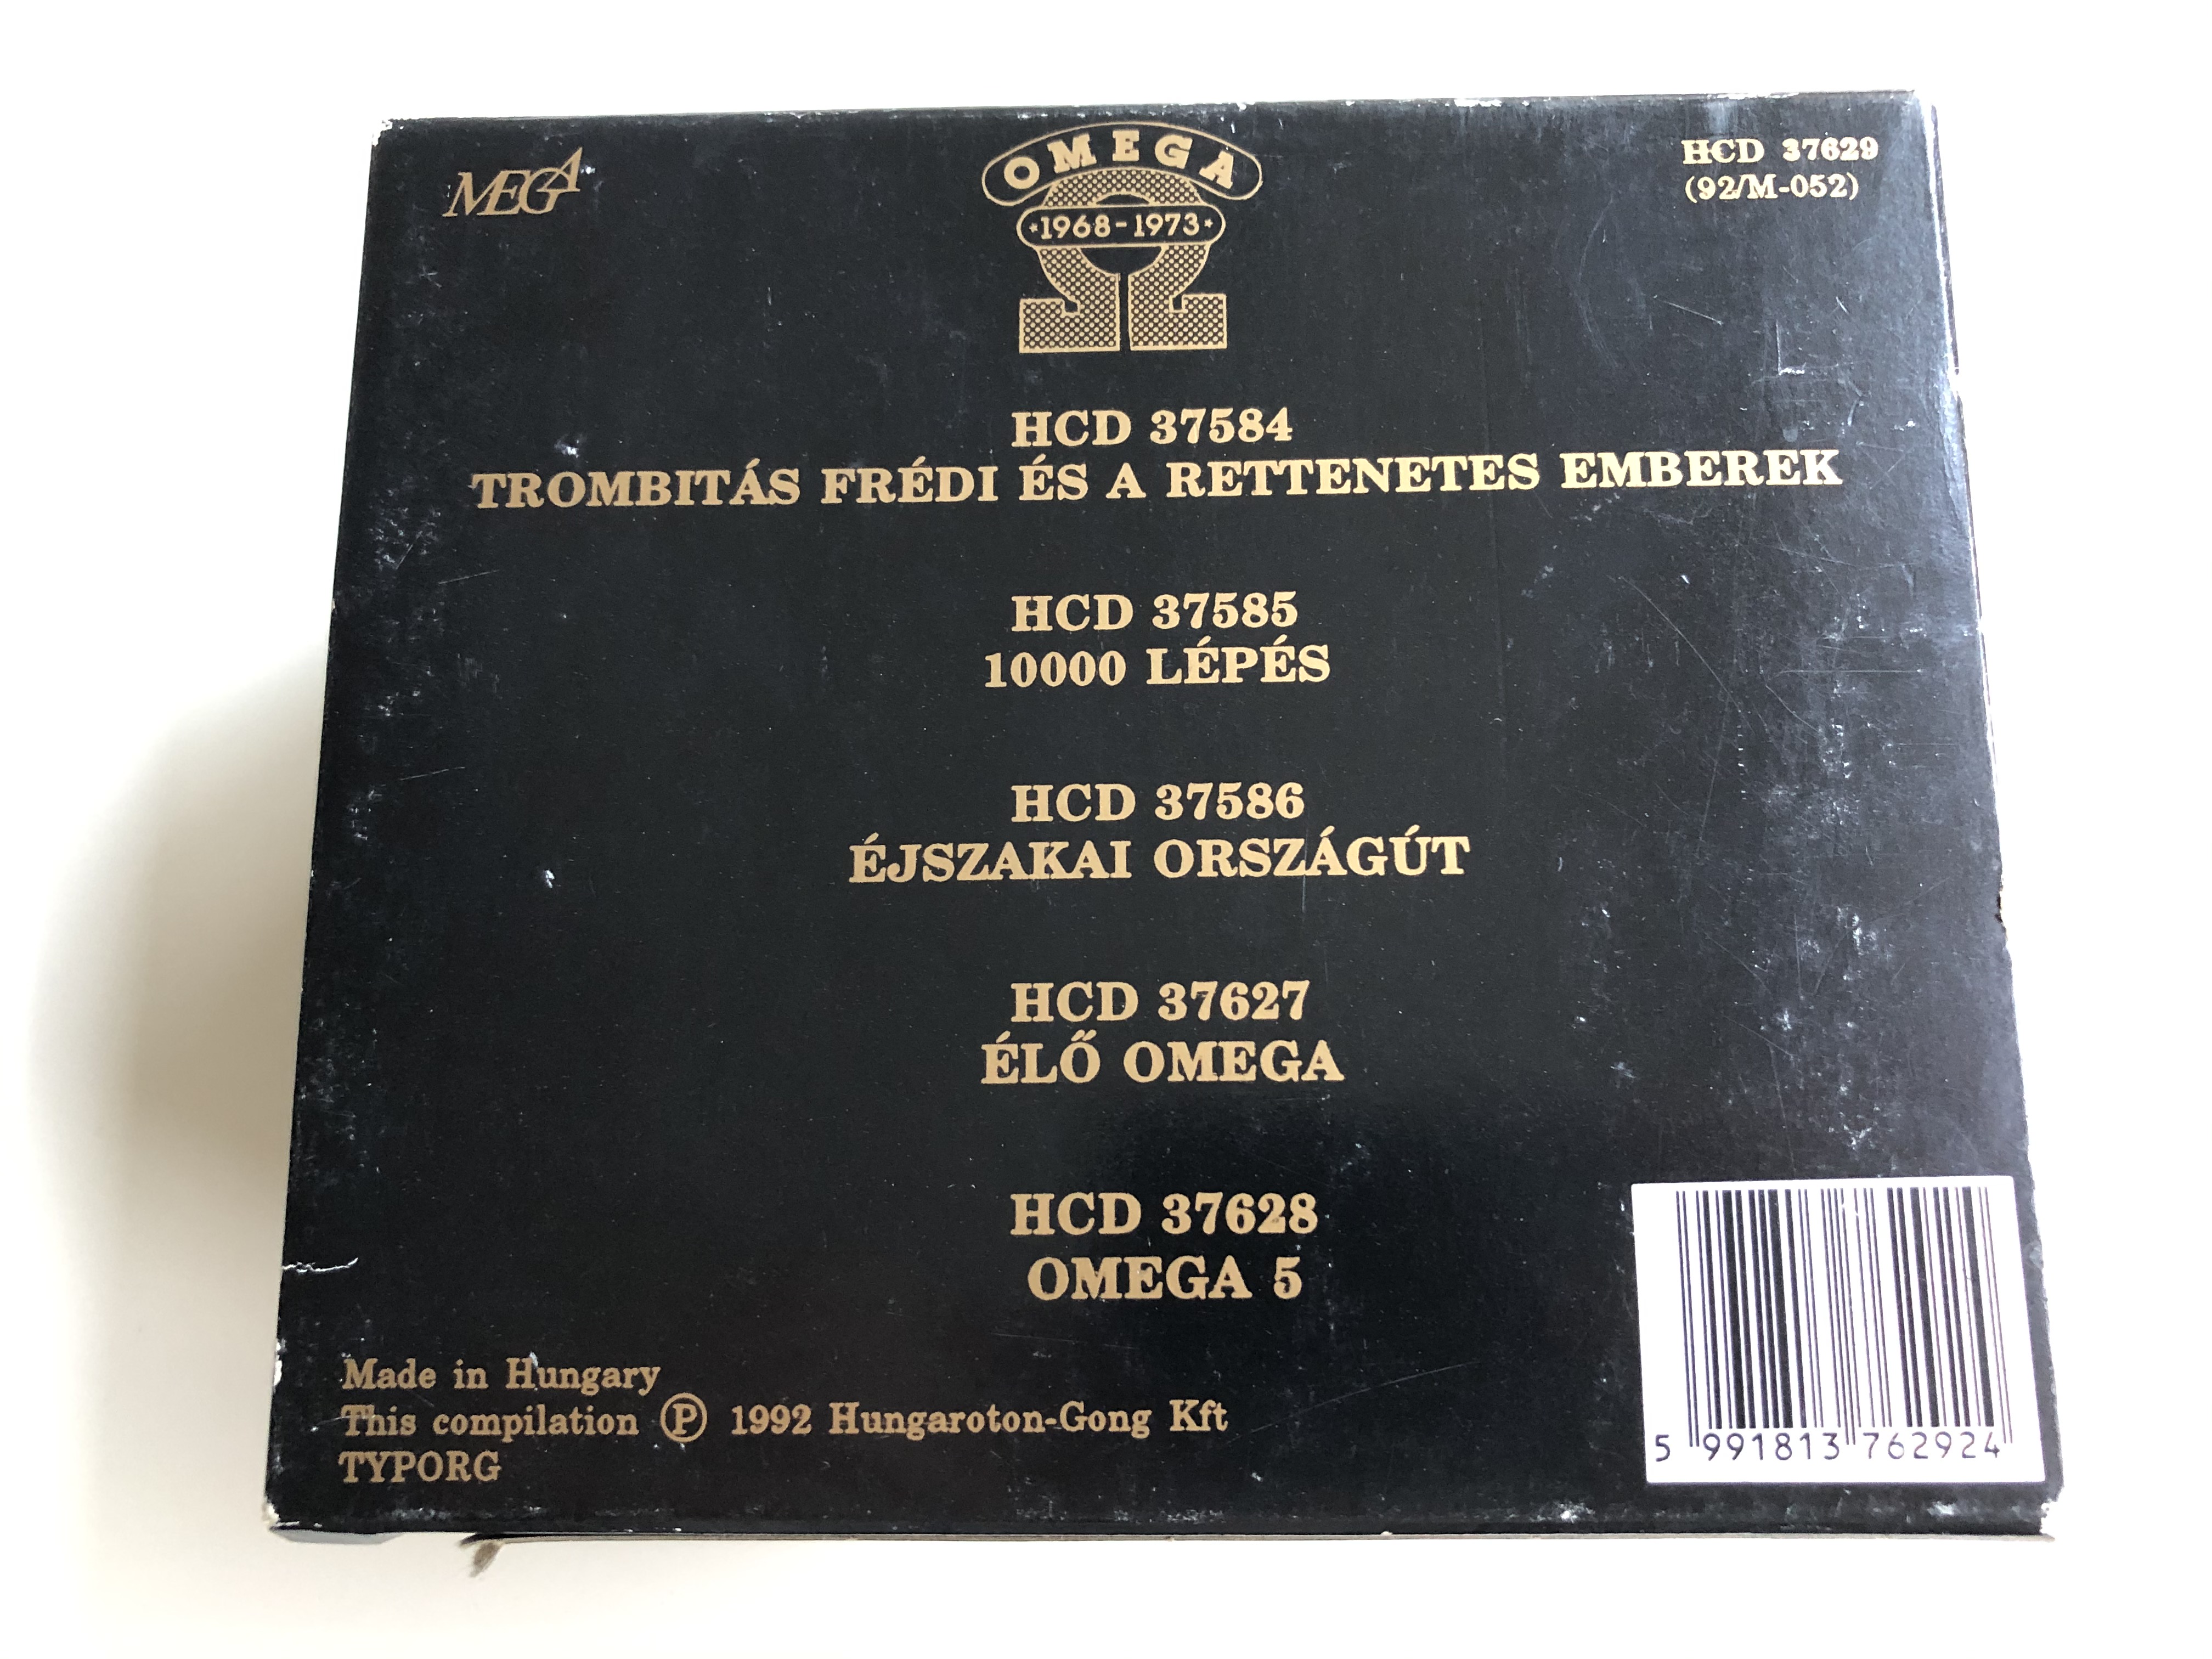 omega-1968-1973-mega-5x-audio-cd-1992-hcd-37629-92m-052-3-.jpg